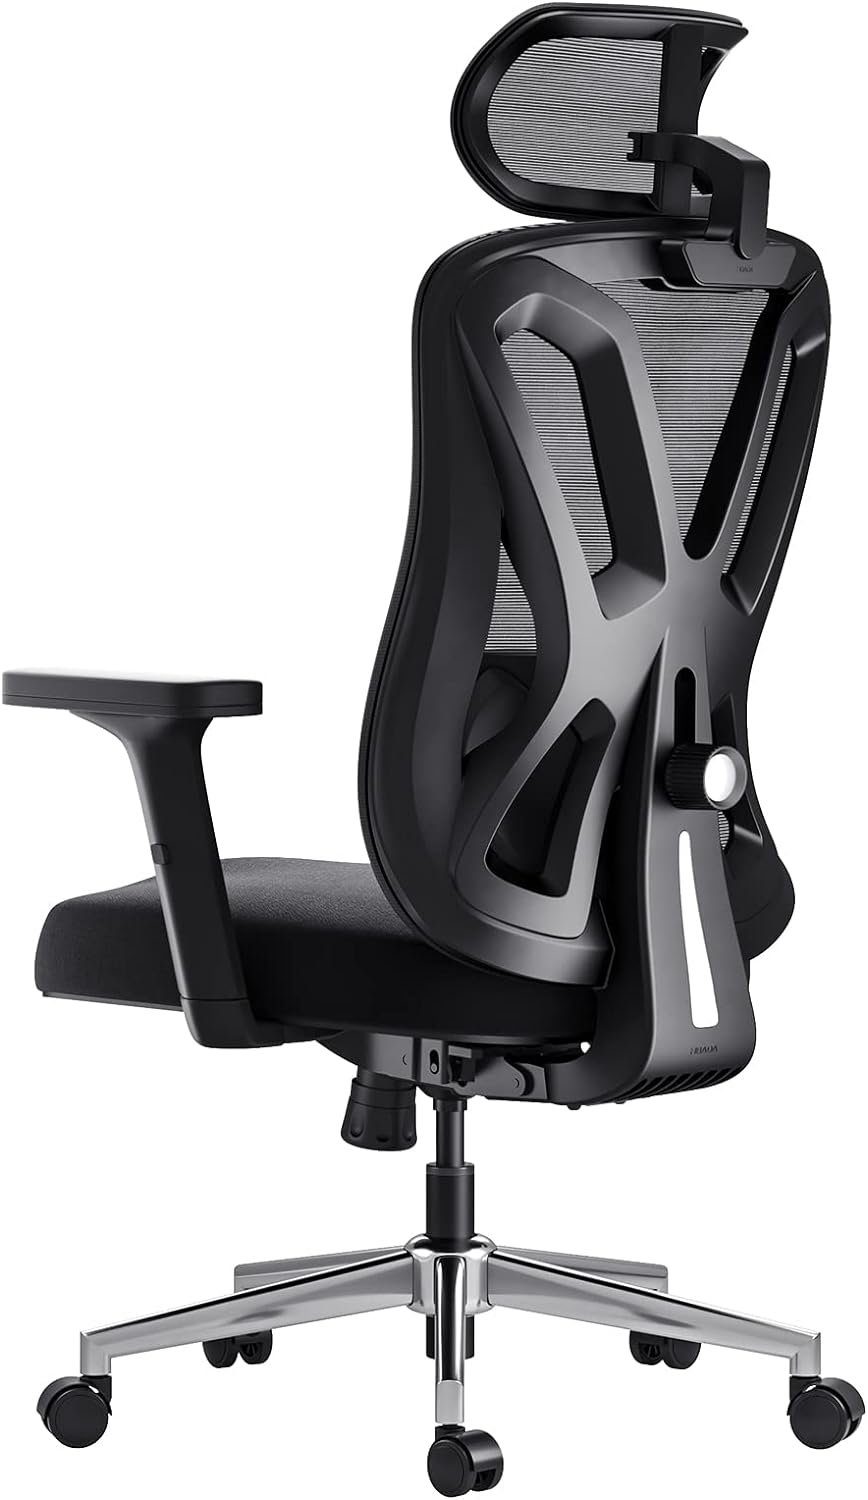 Hbada Bürostuhl (atmungsaktive elastische Sitzkissen, verstellbare Armlehnen und Kopfstützen), Ergonomischer Bürostuhl,Schreibtischstuhl Verstellbarer Lordosenstütze